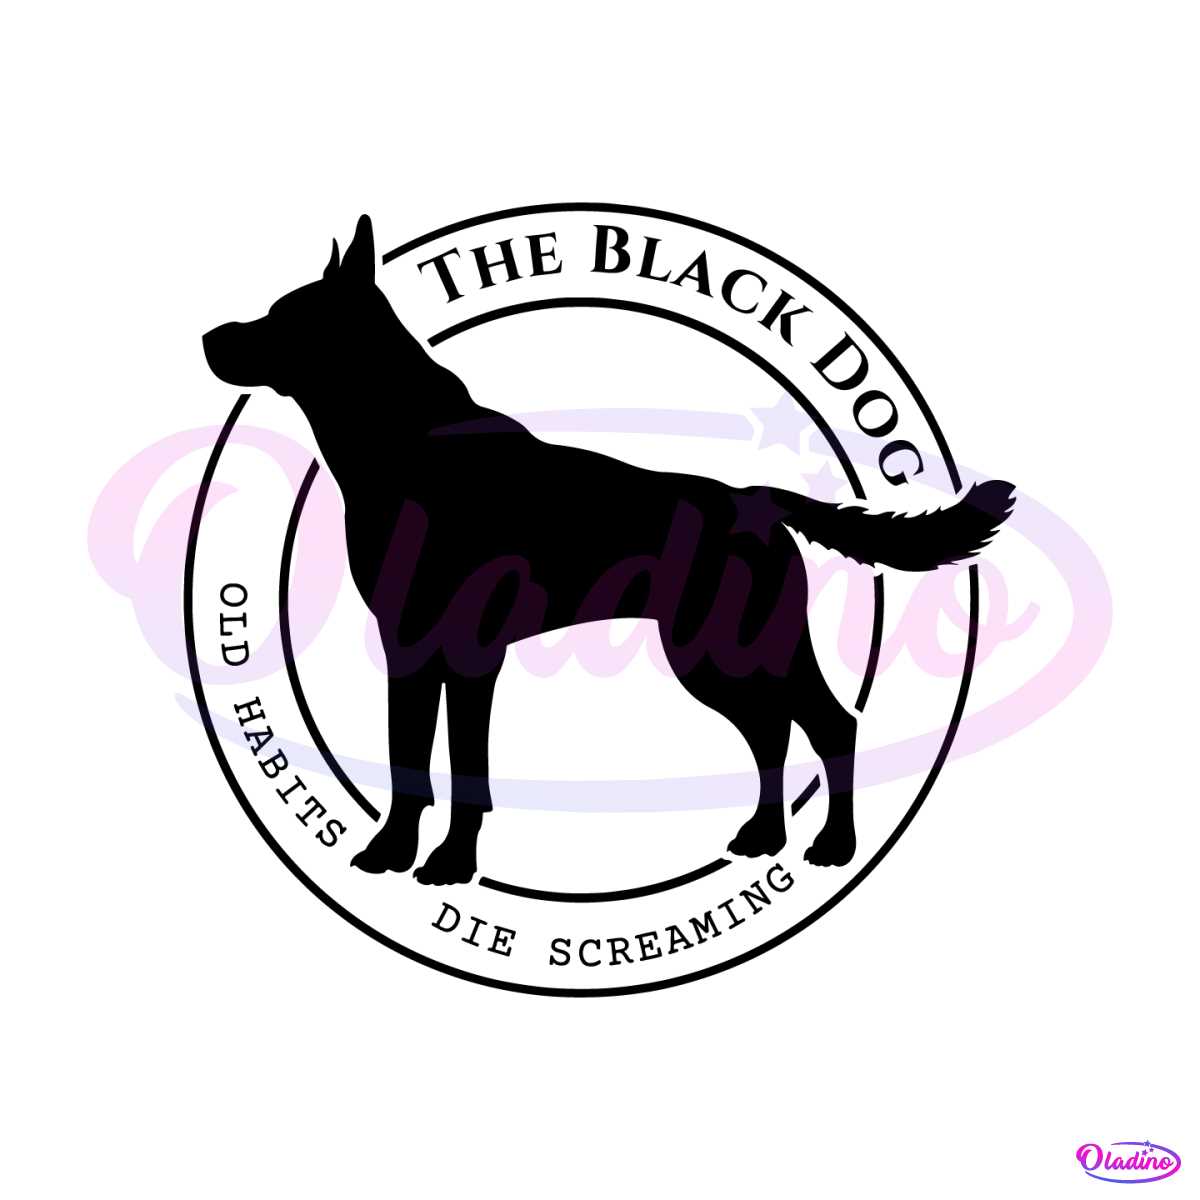 tortured-poets-department-the-black-dog-svg